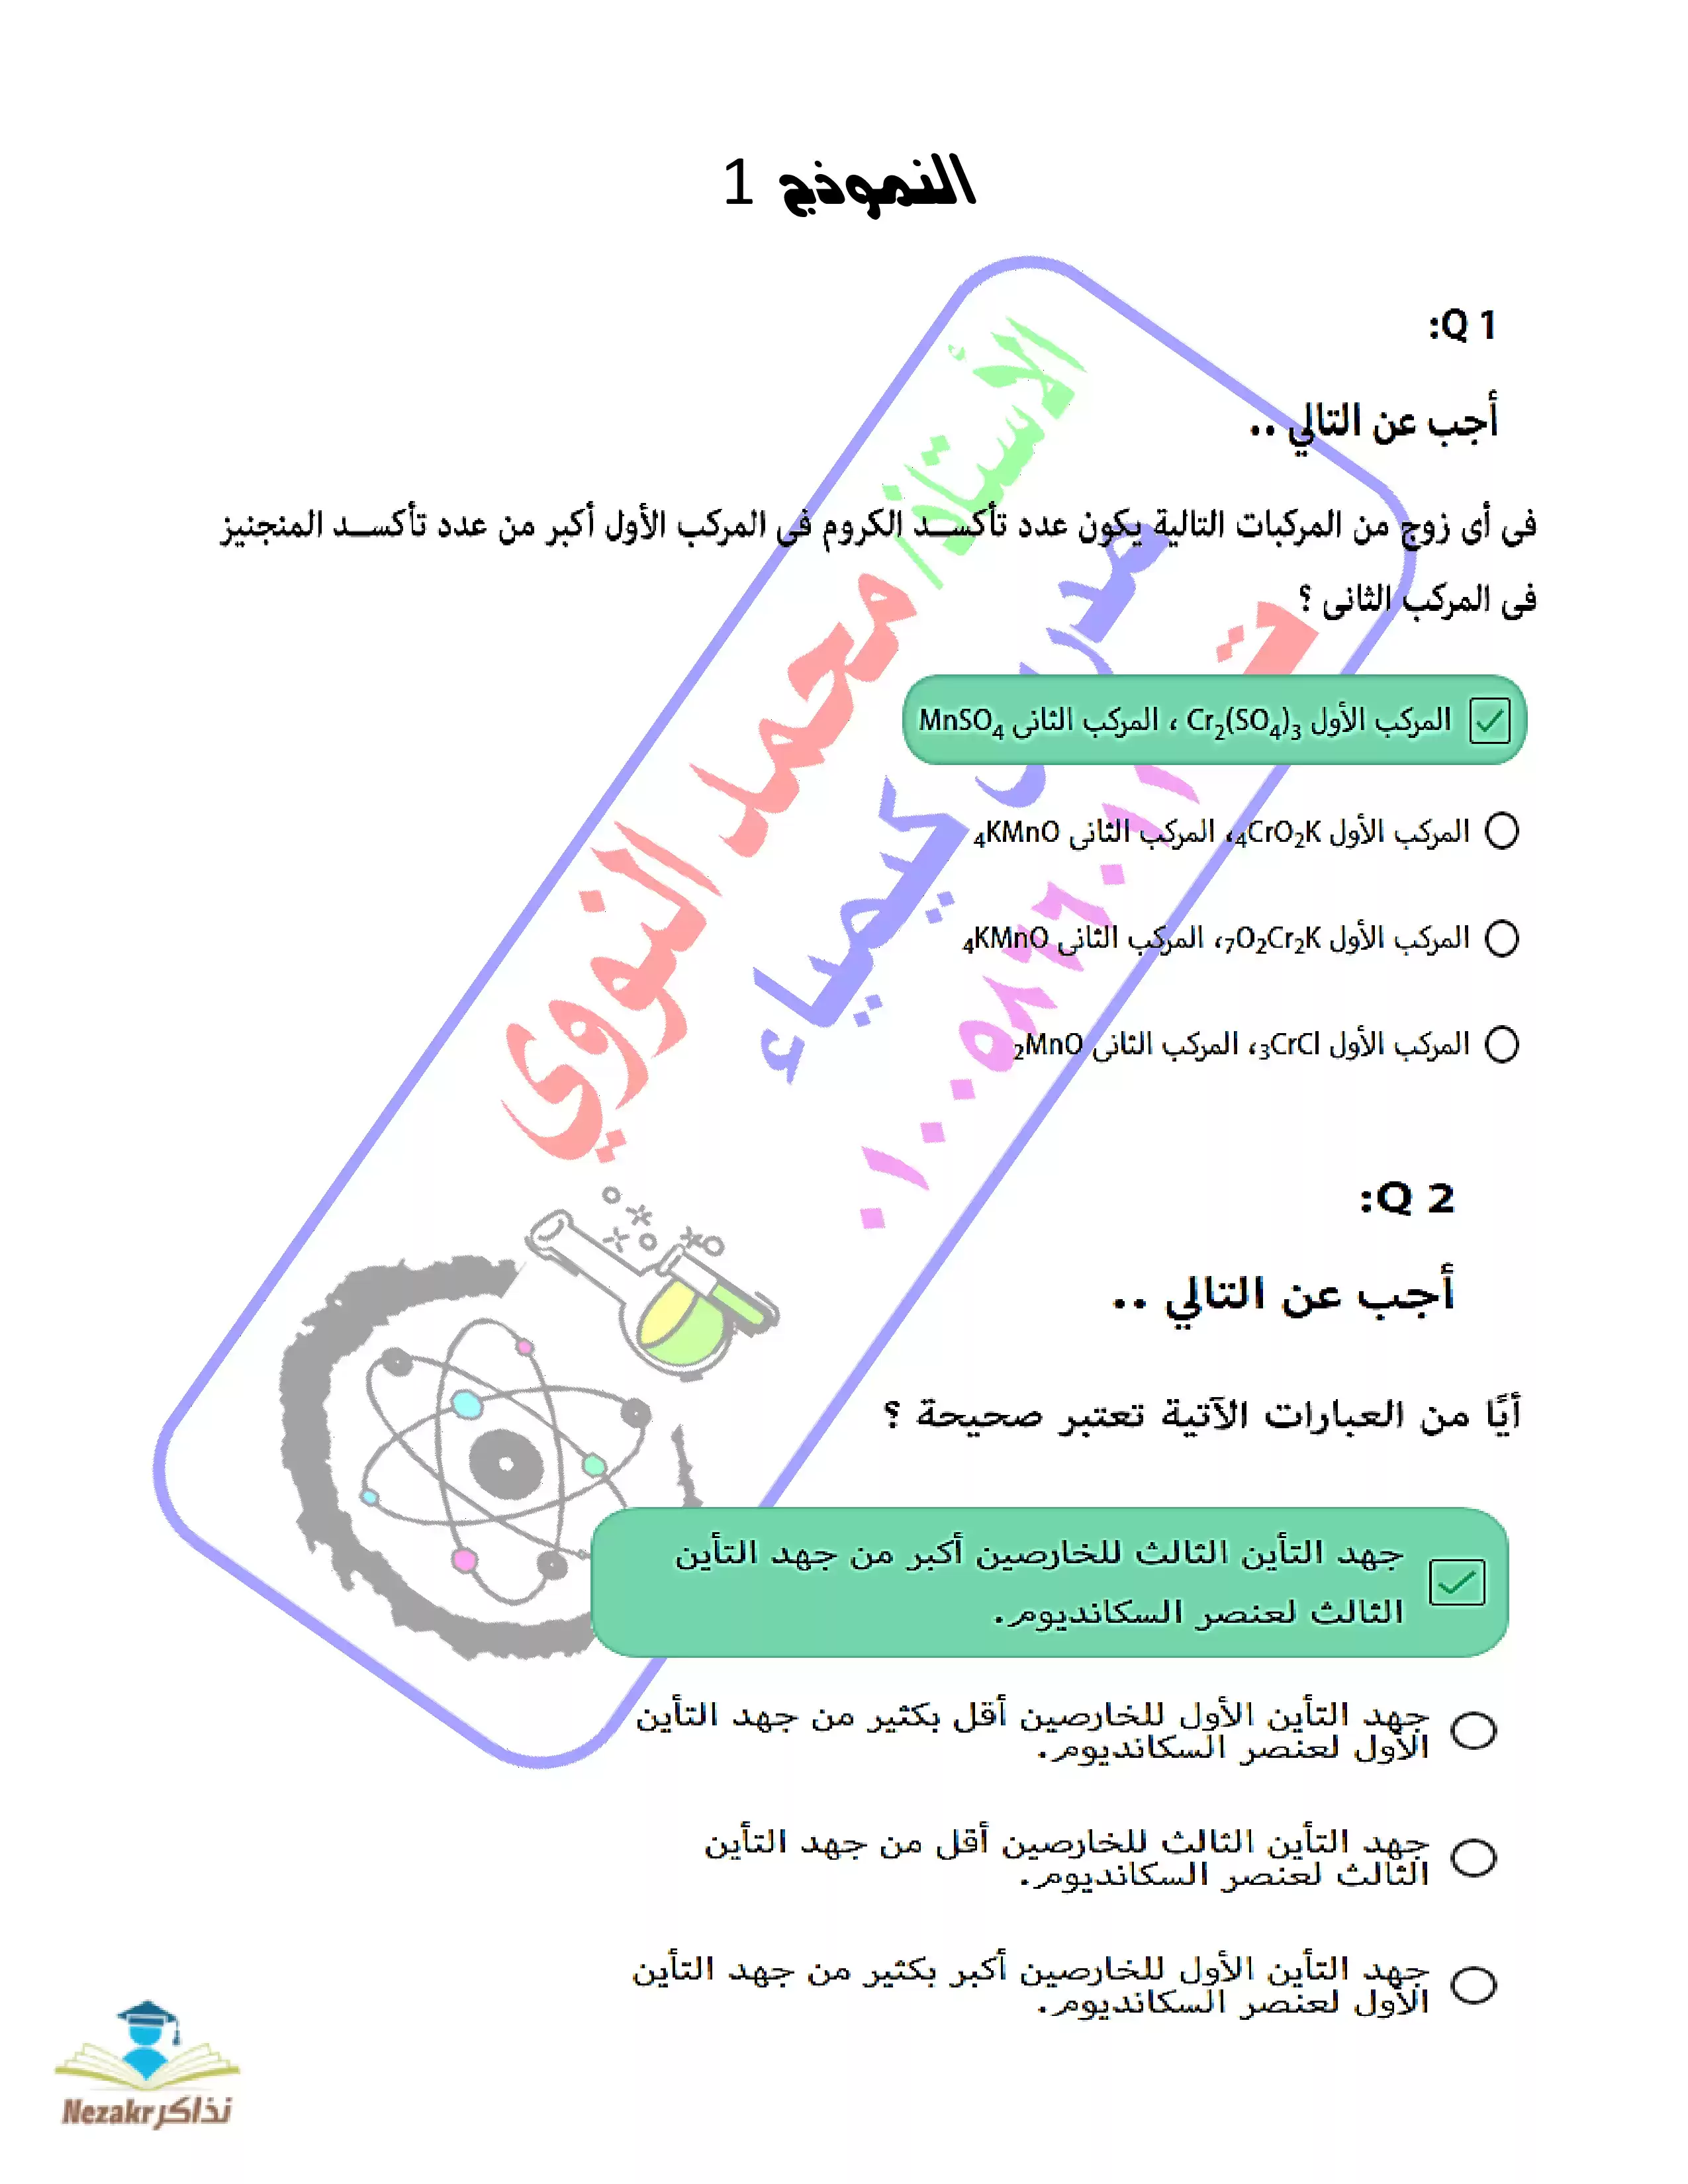 نماذج امتحانات منصة حصص مصر في الكيمياء للصف الثالث الثانوي PDF بالاجابات